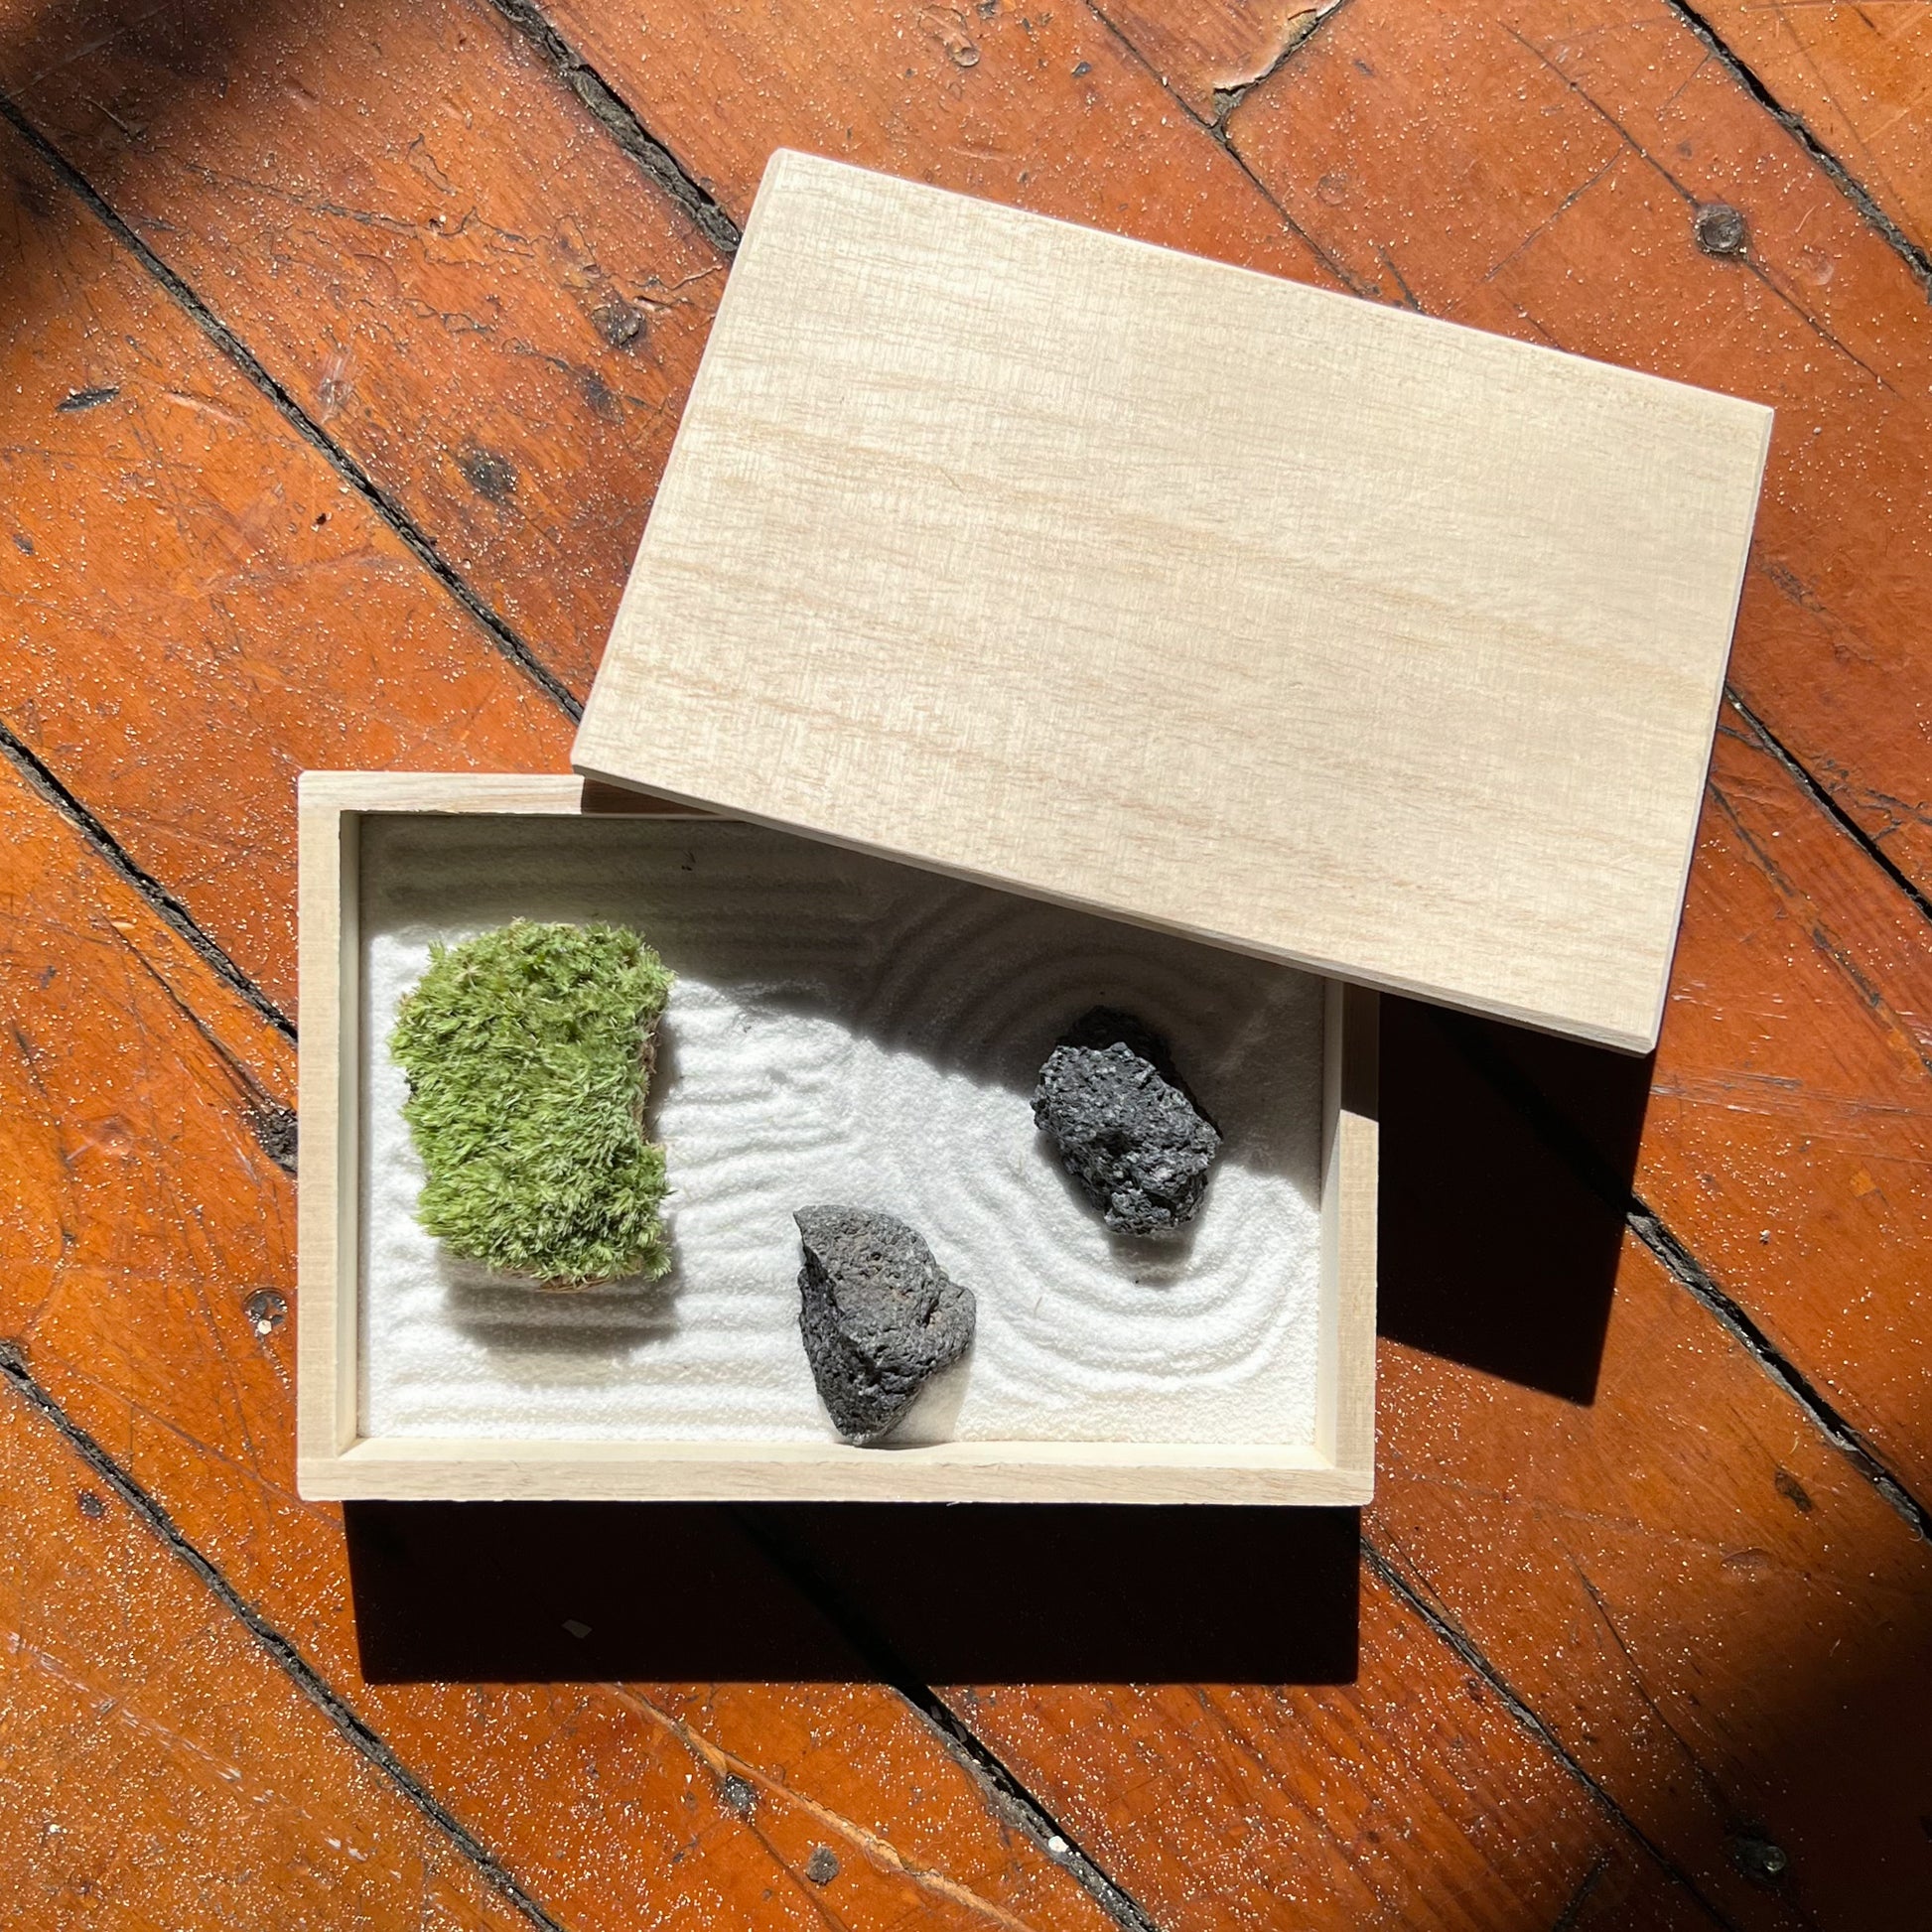 Mini zen garden kit -  France